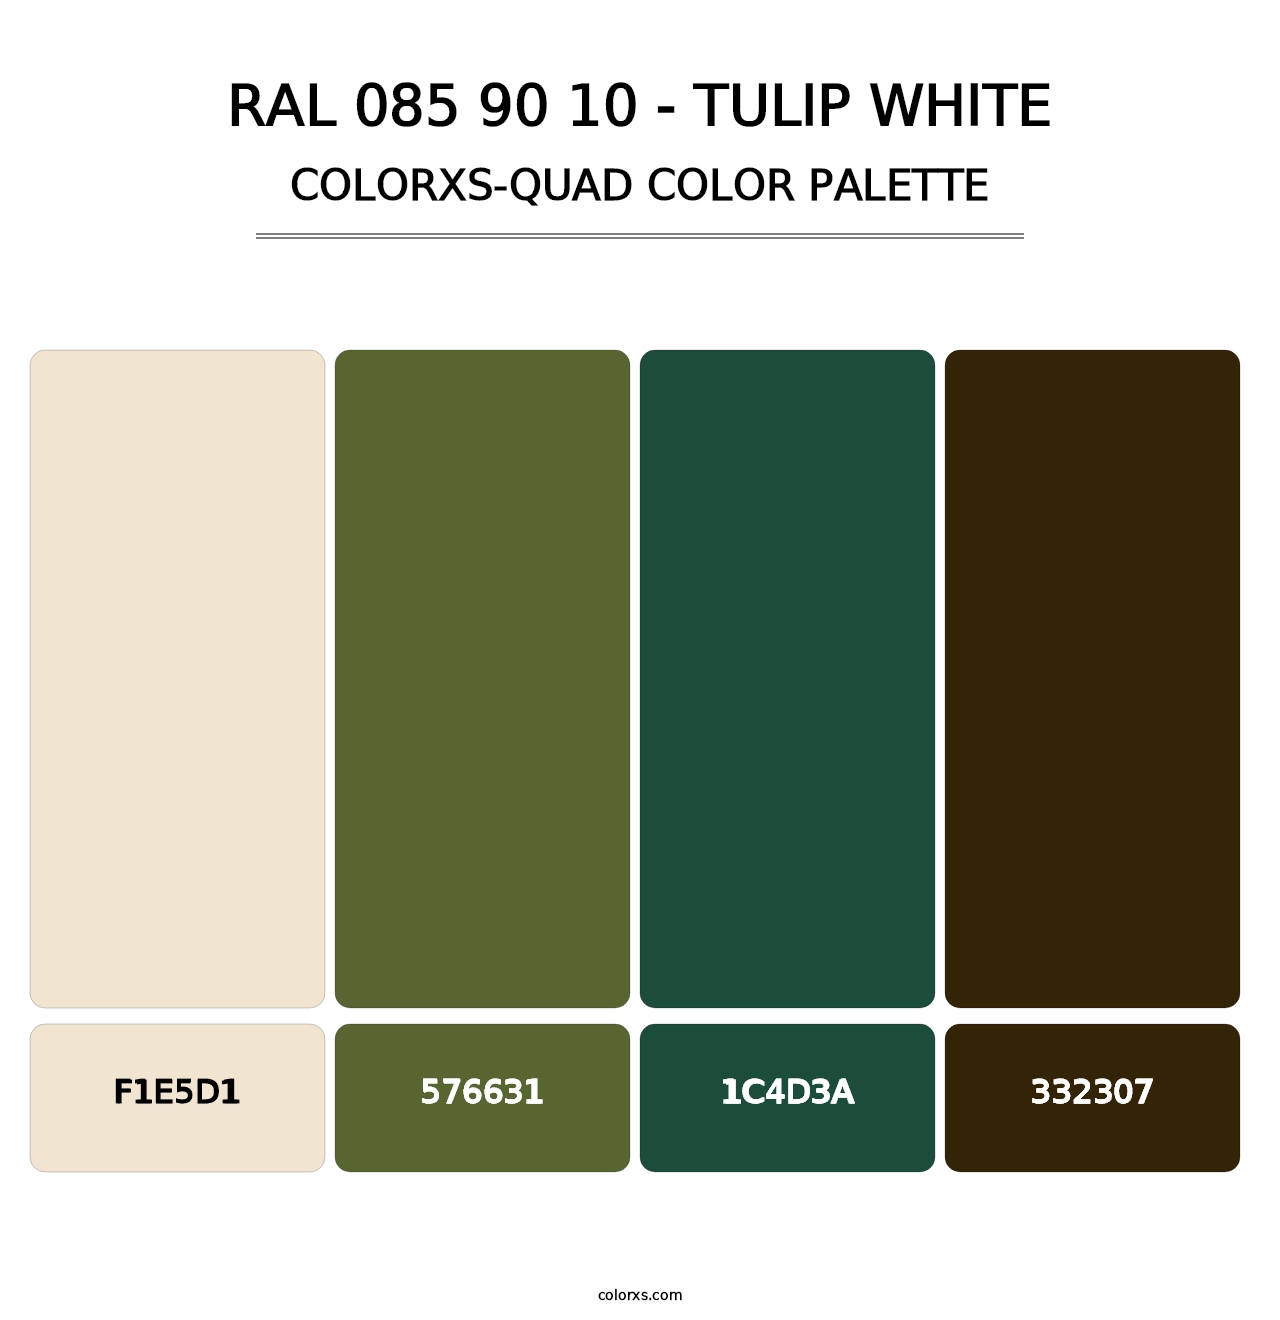 RAL 085 90 10 - Tulip White - Colorxs Quad Palette